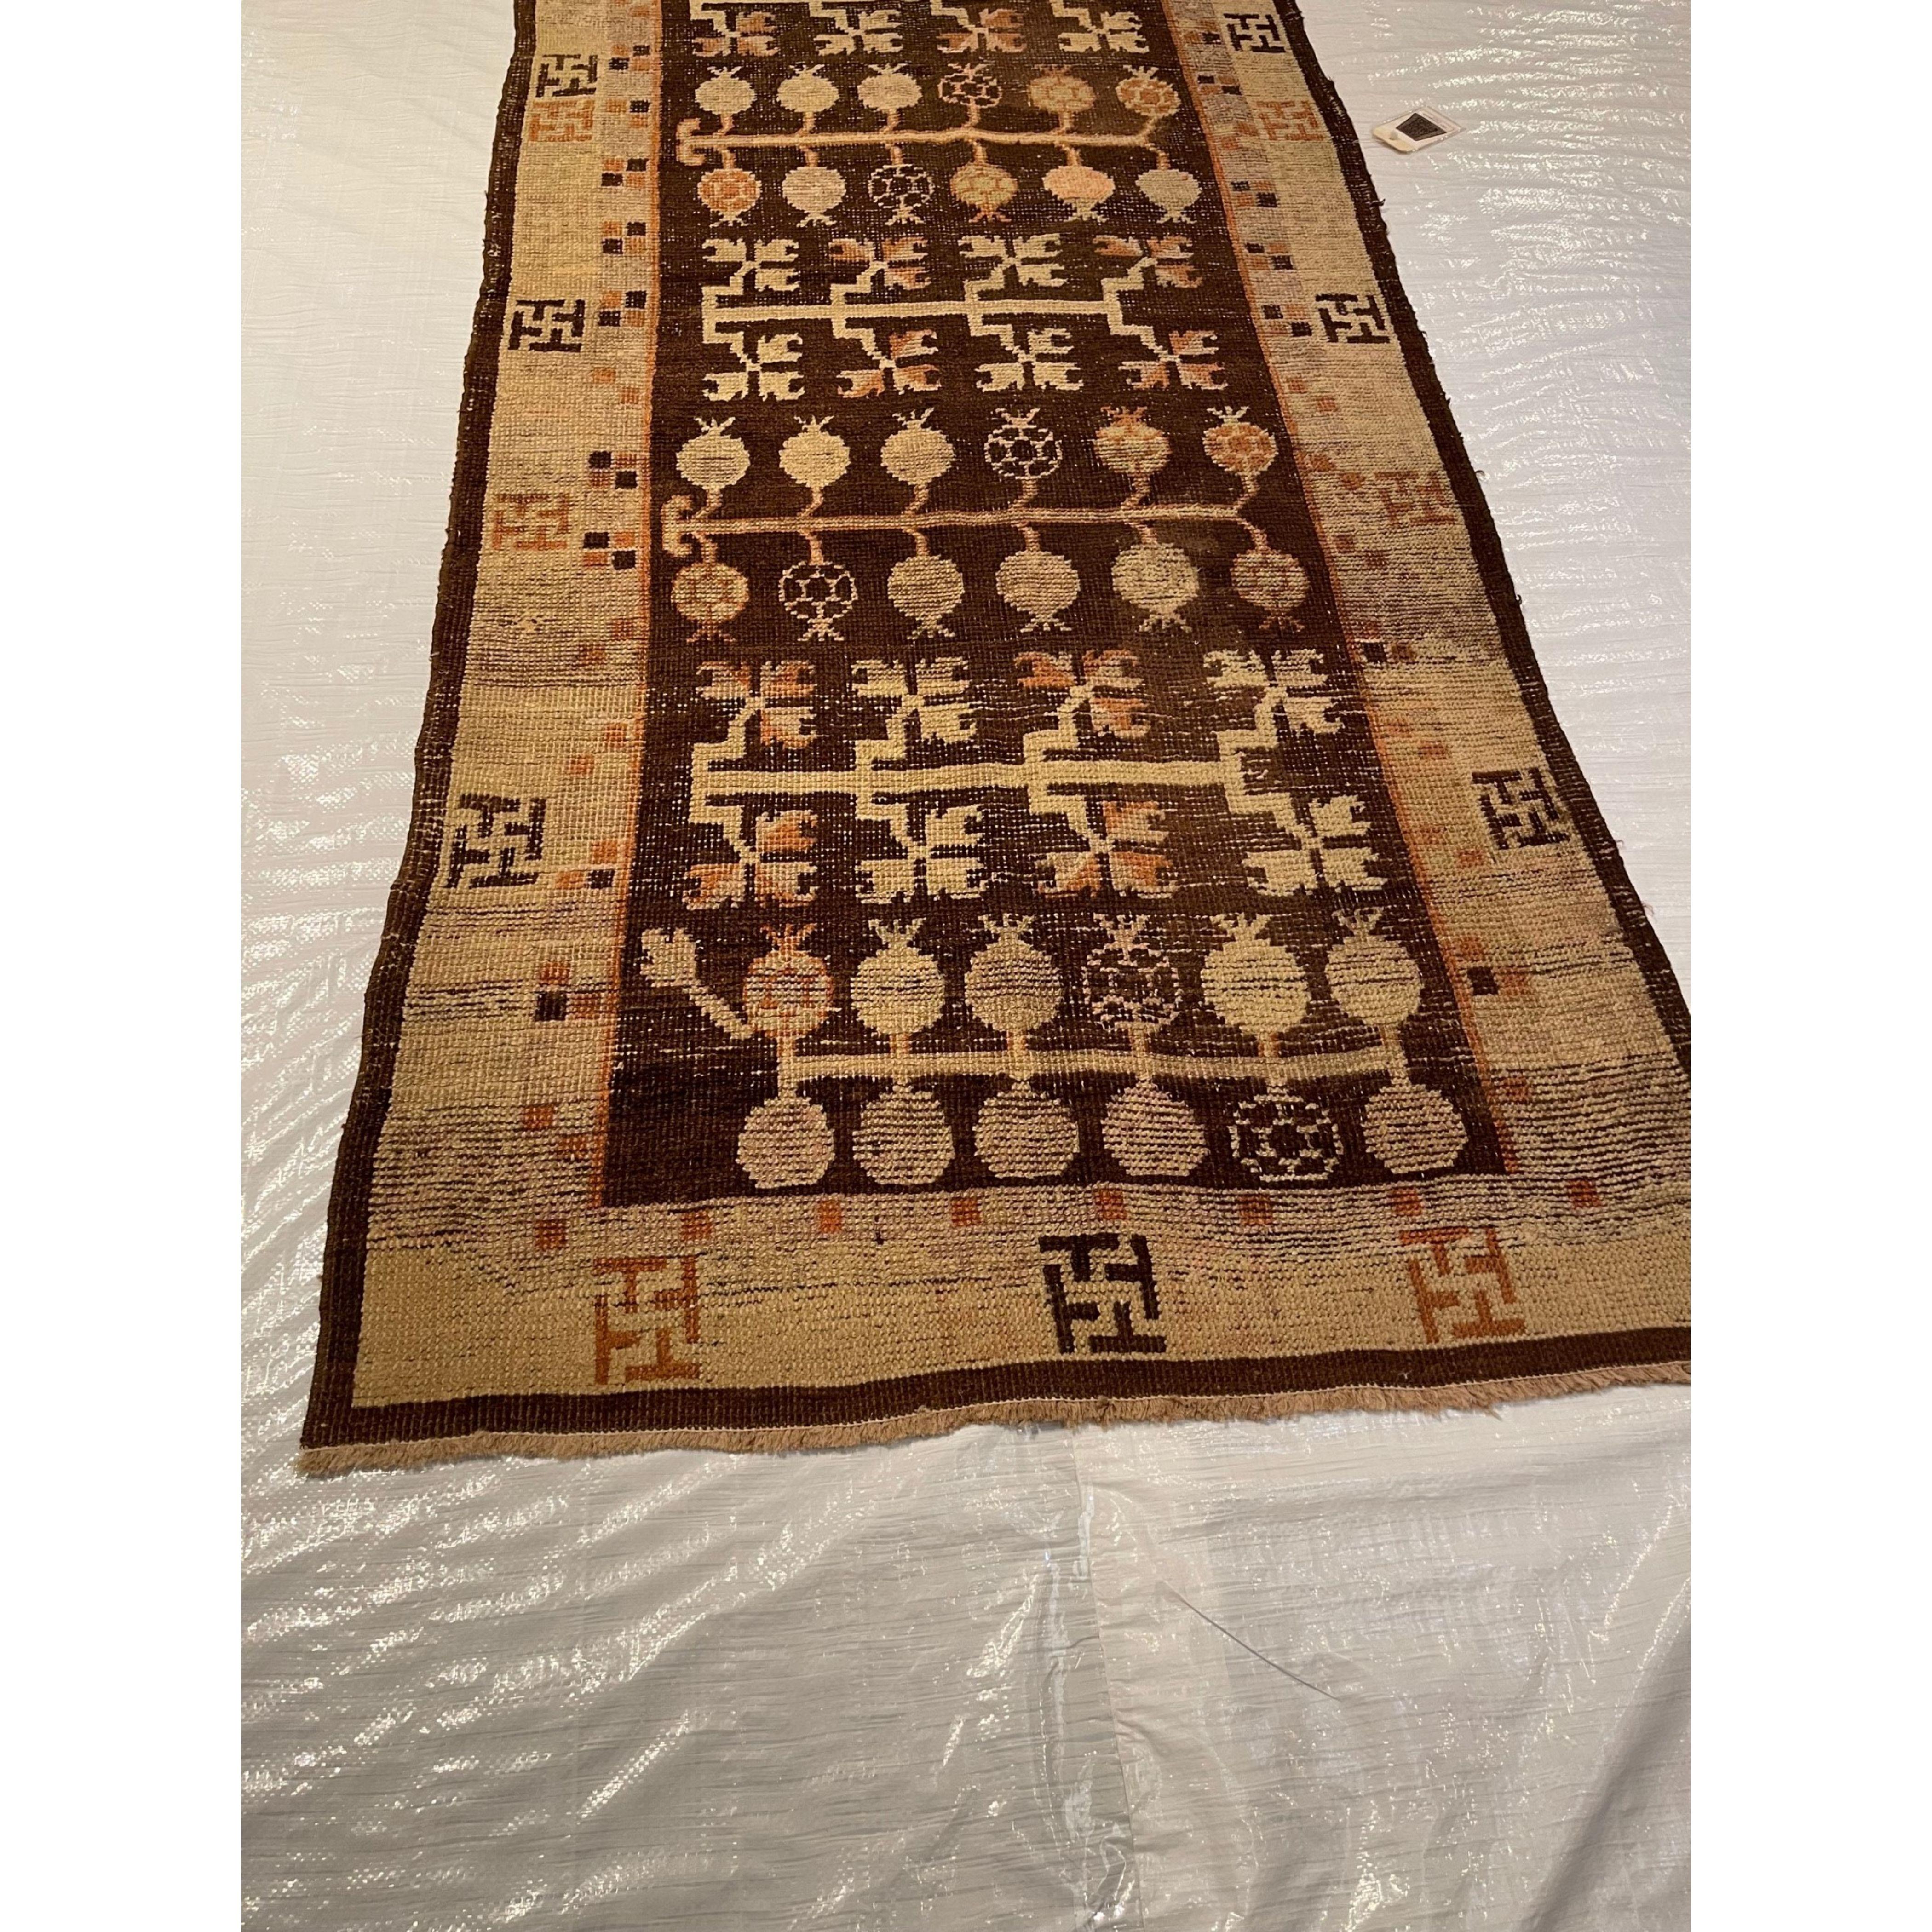 Other Antique 1900 Samarkand Rug For Sale